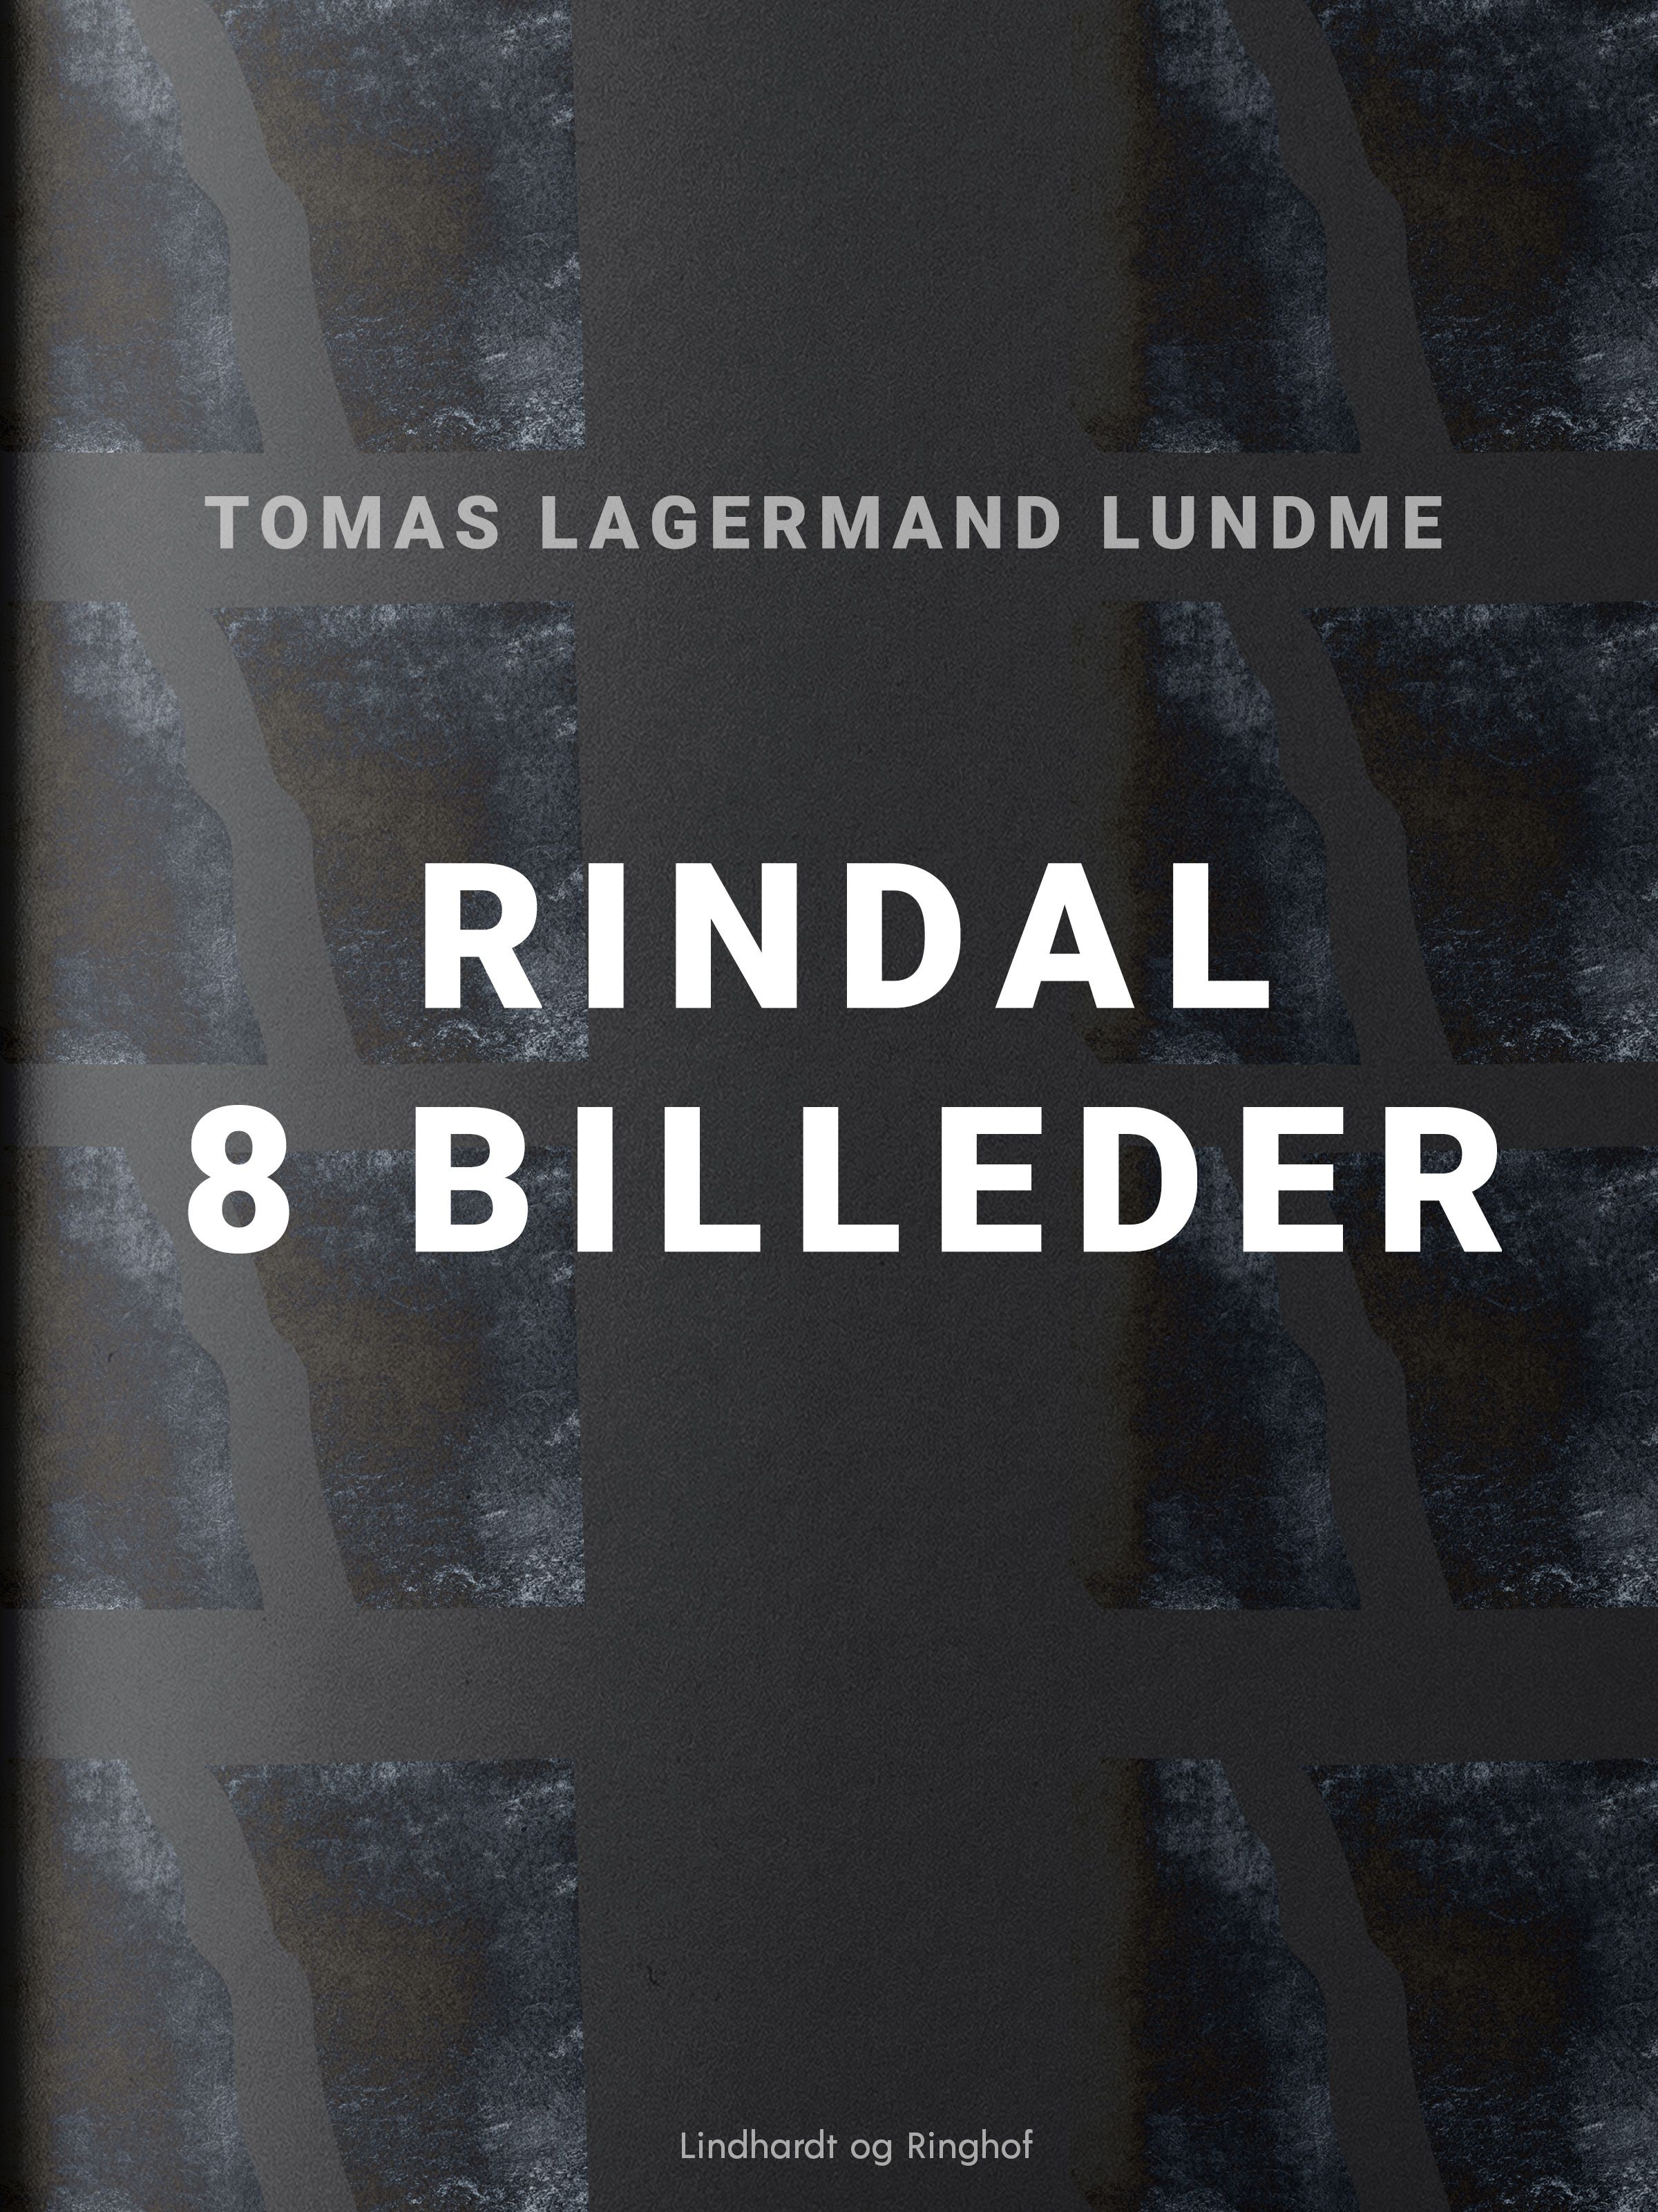 Rindal - 8 billeder, e-bog af Tomas Lagermand Lundme